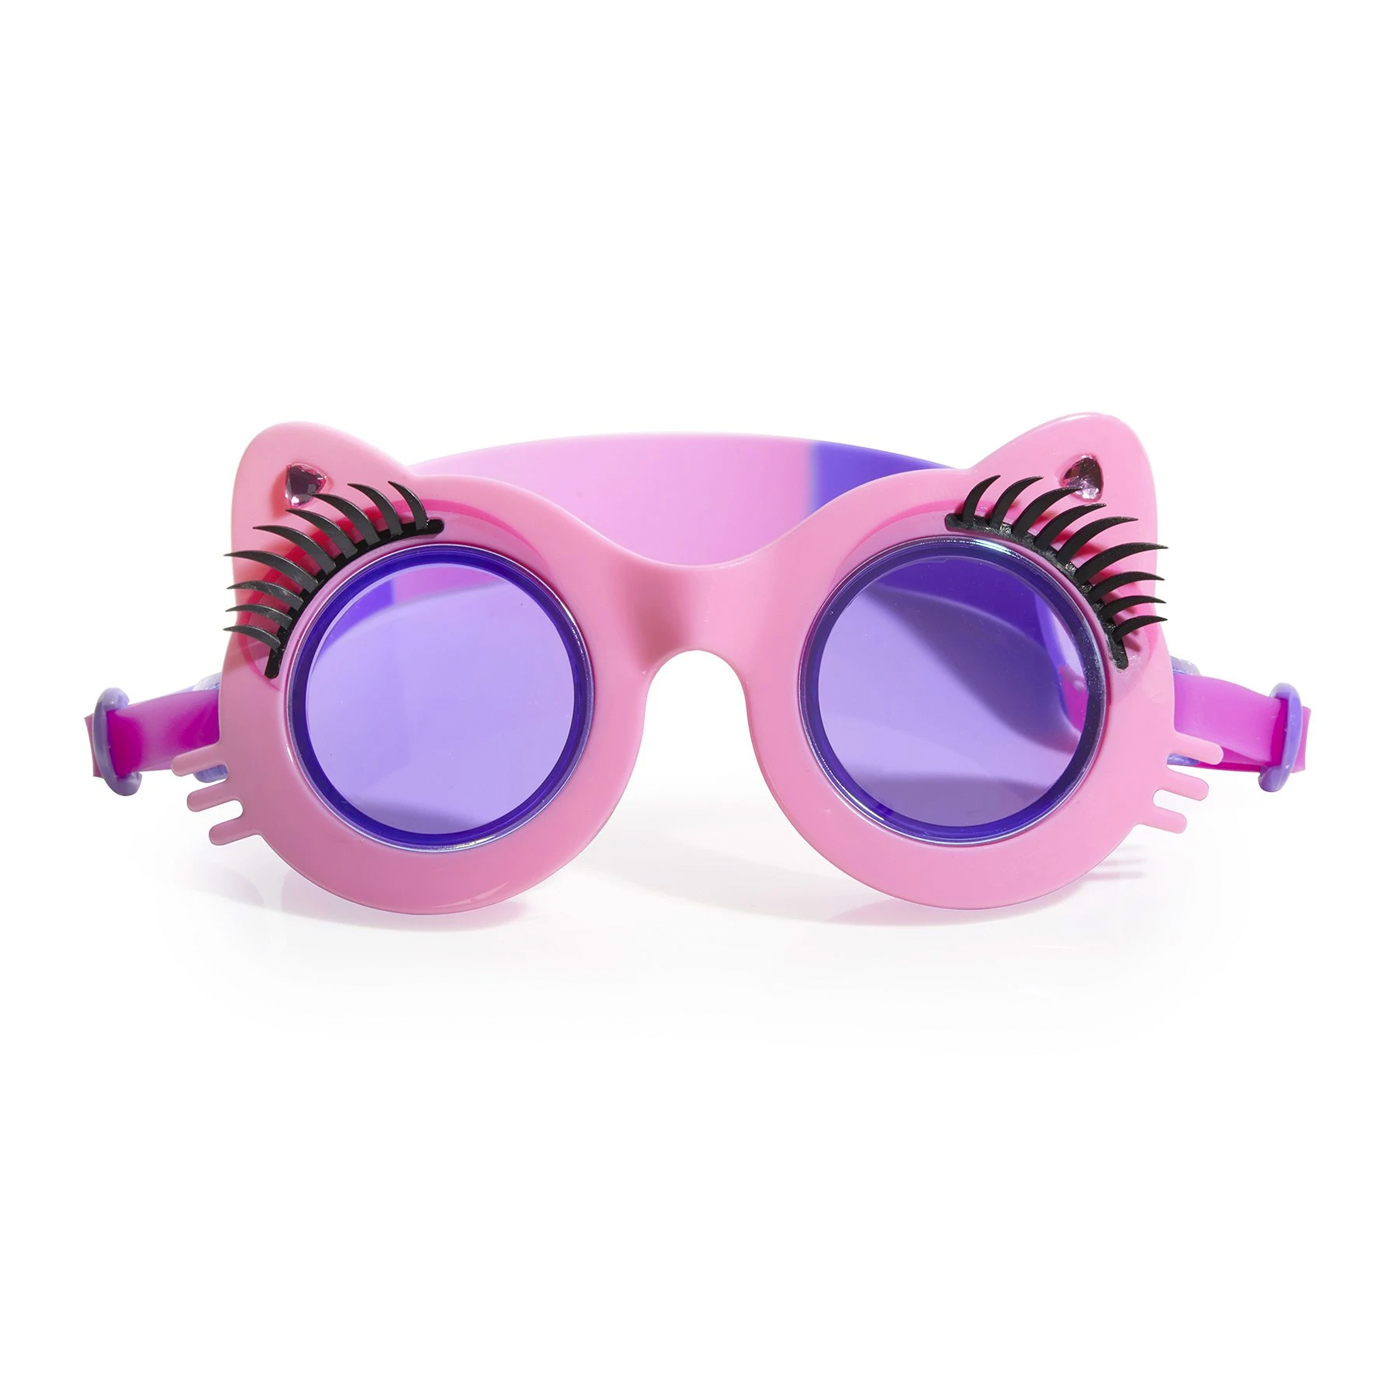  Bling2o Pawdry Hepburn Deniz Gözlüğü | Pink